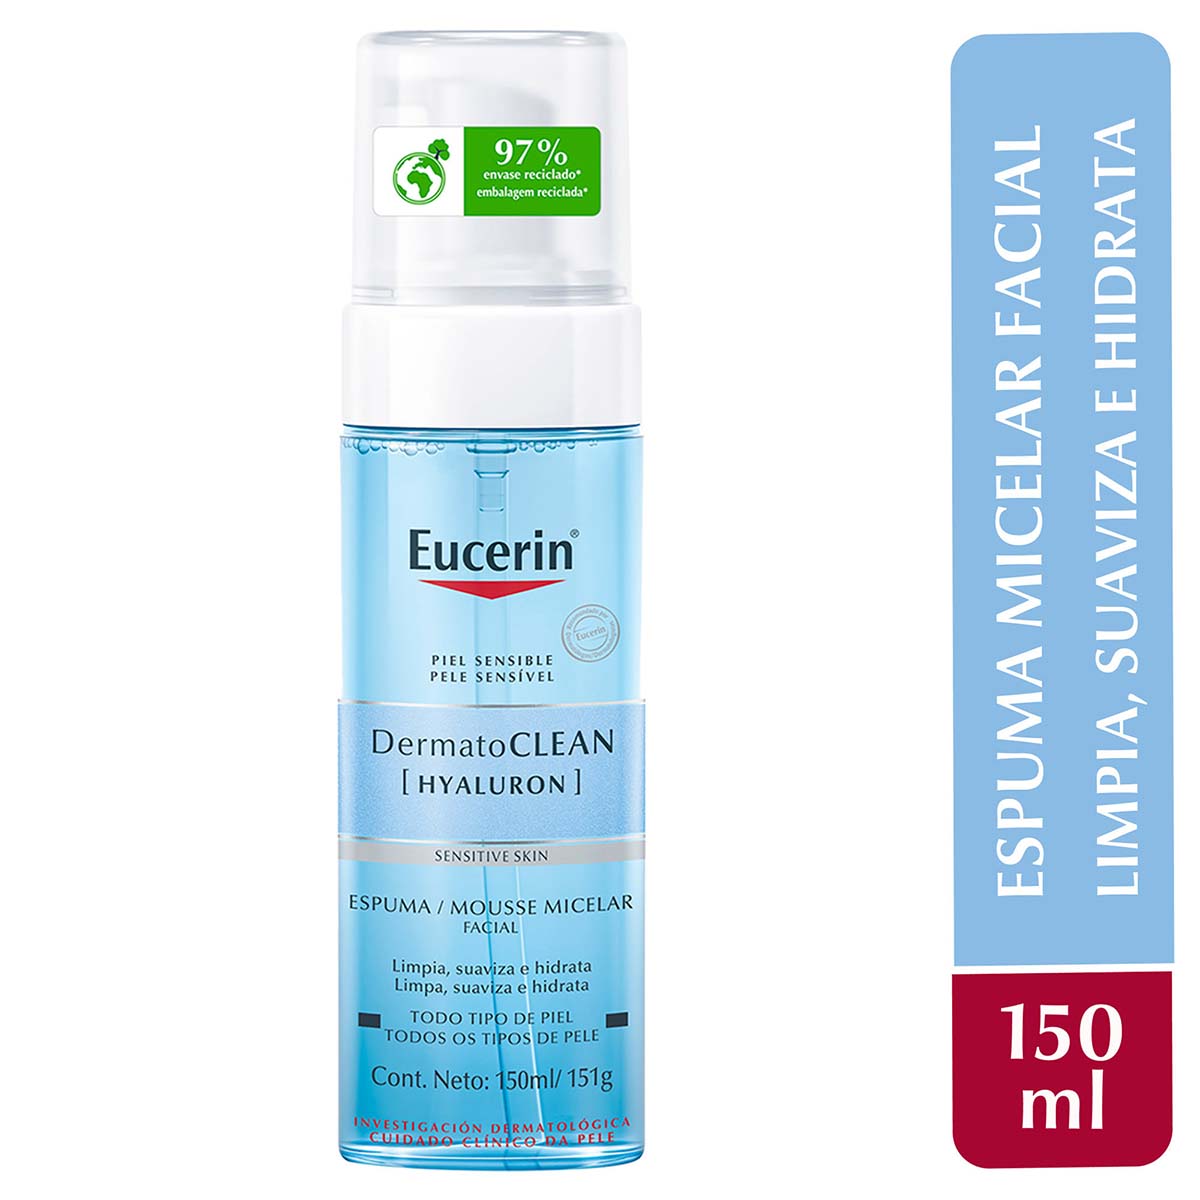 Eucerin dermatoclean espuma micelar facial día y noche 150ml.